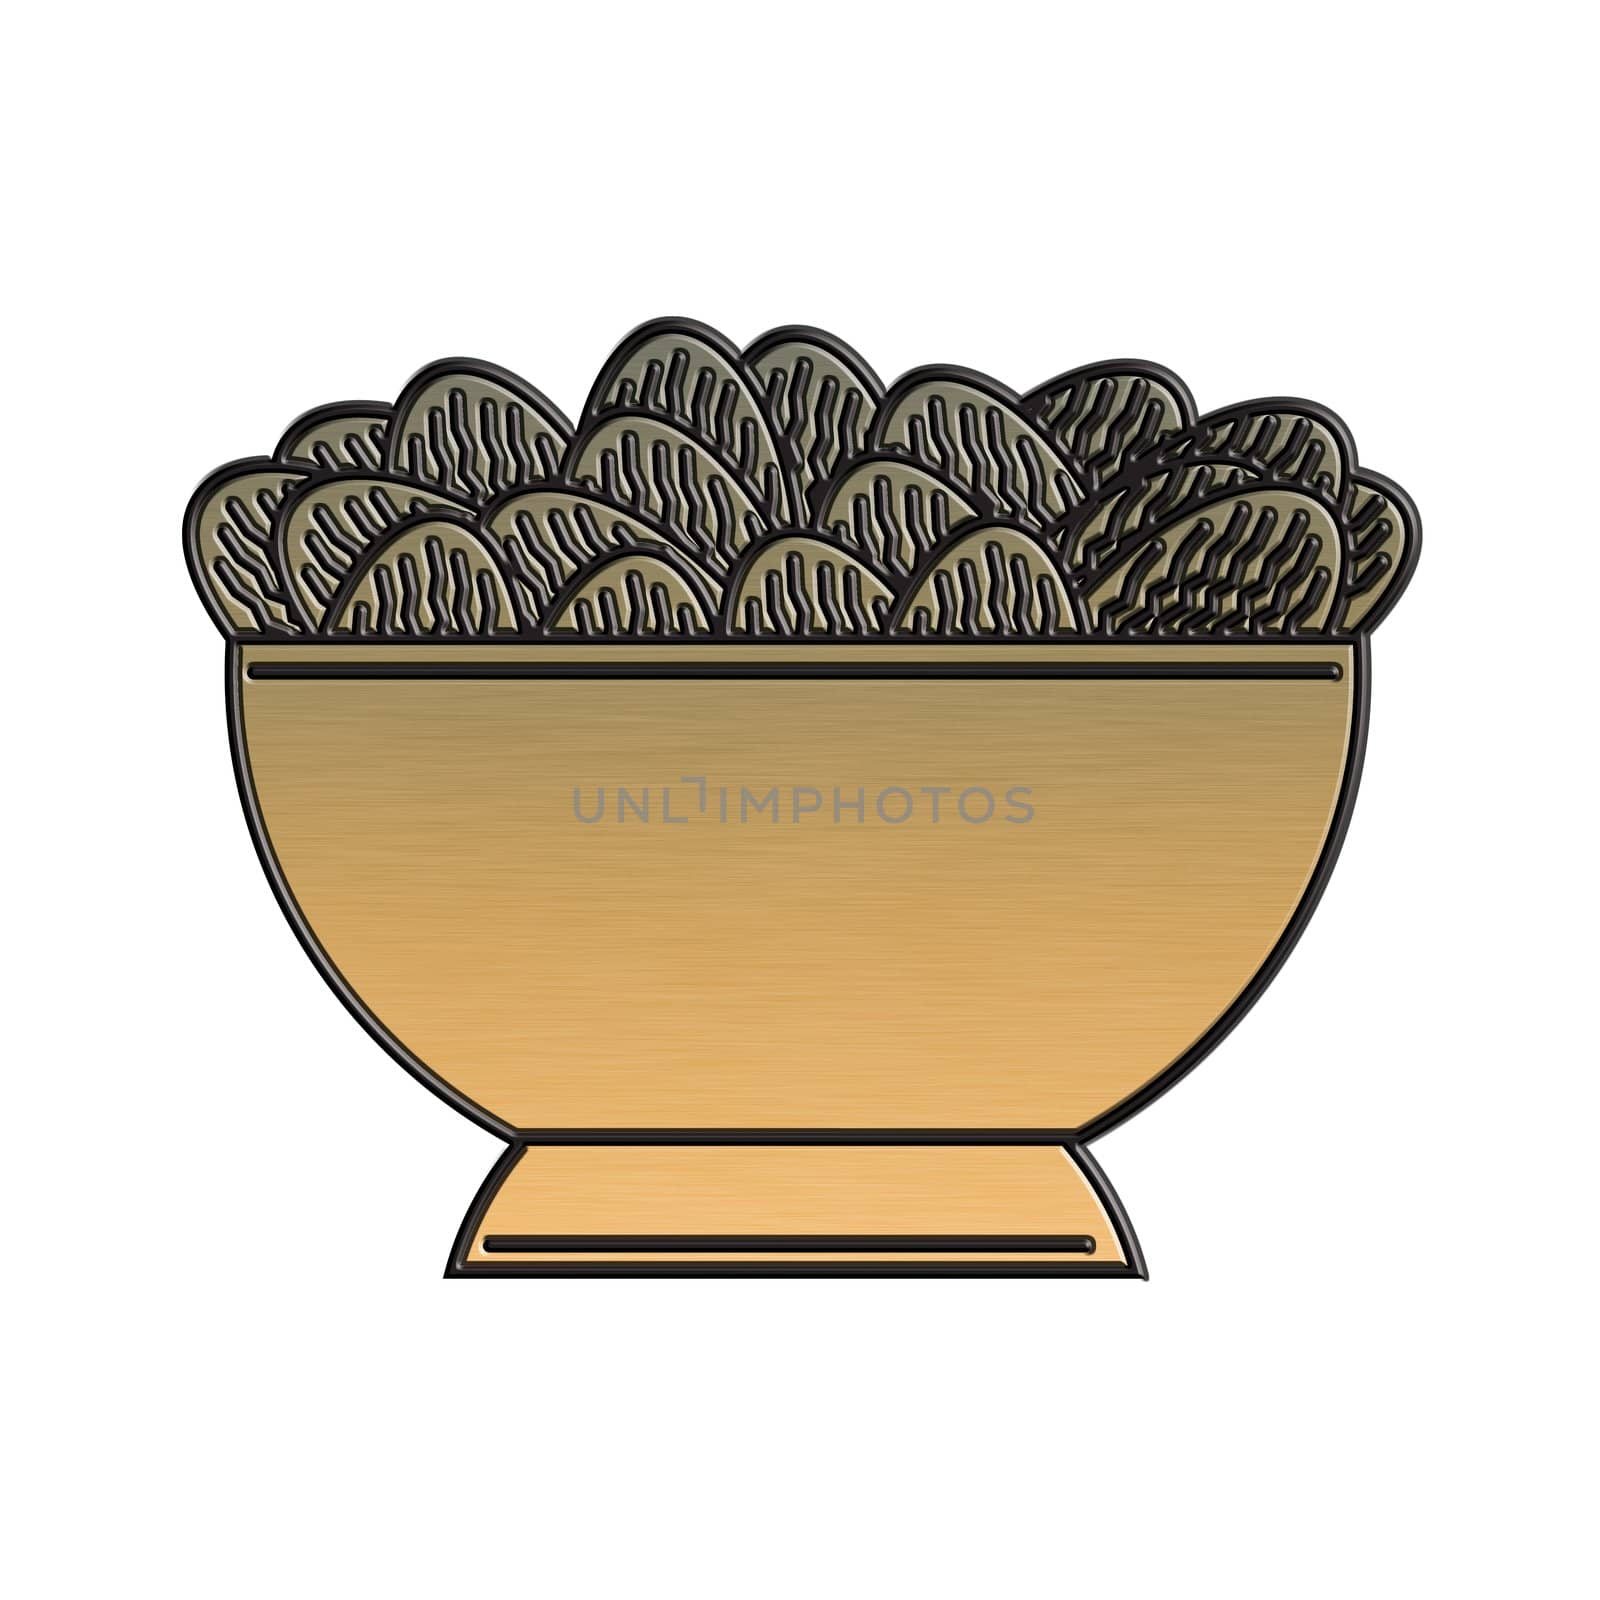  golden potato chip bowl by patrimonio